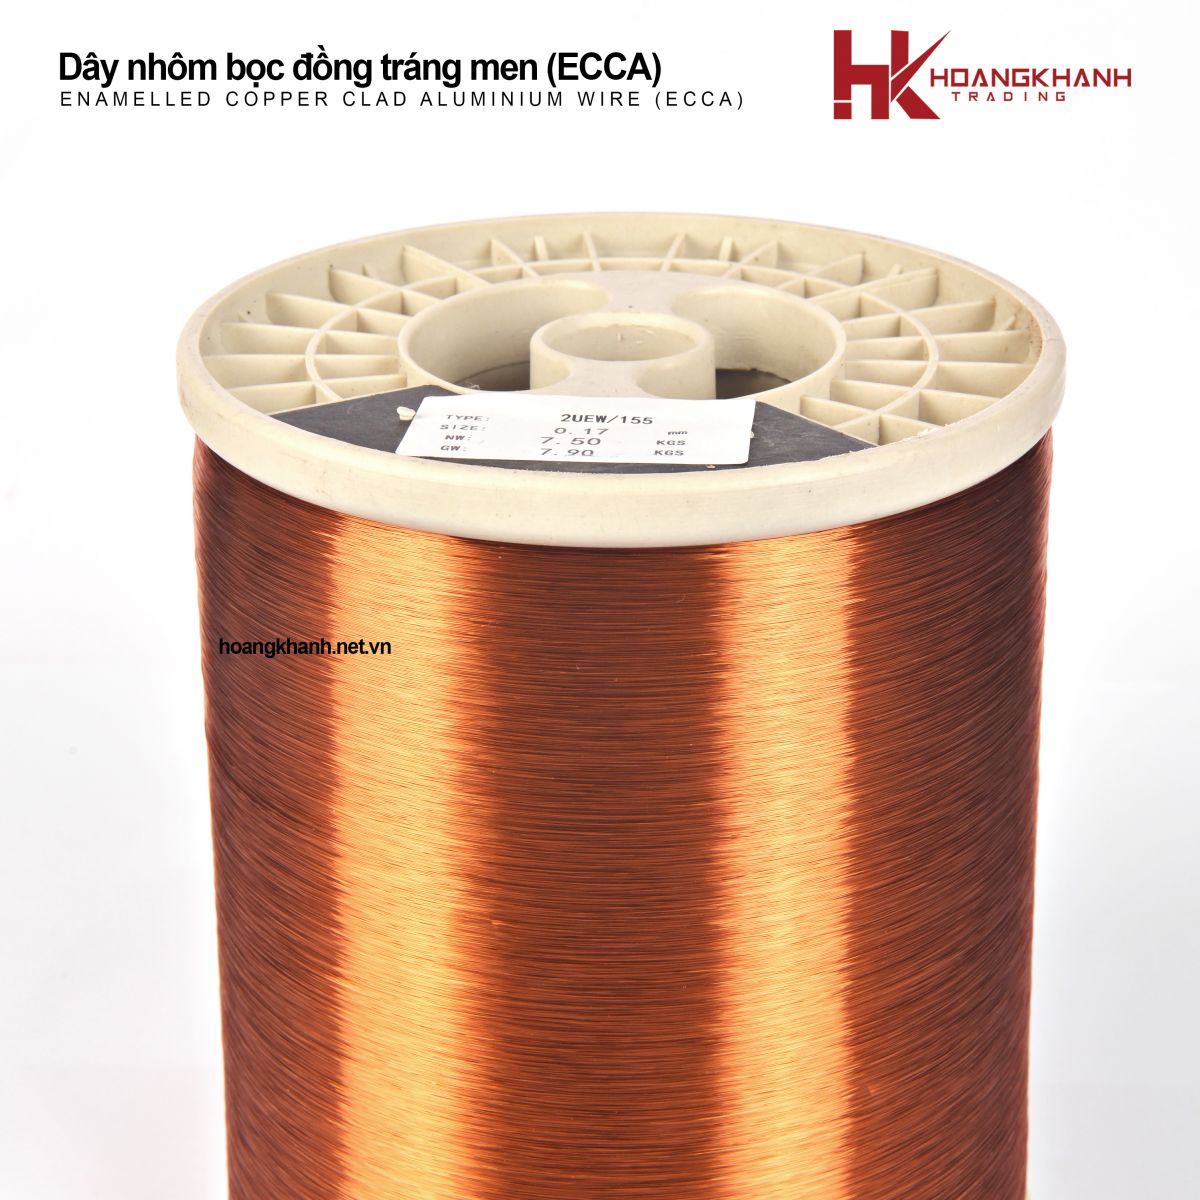 Enamelled Copper Clad Aluminium Wire (ECCA)